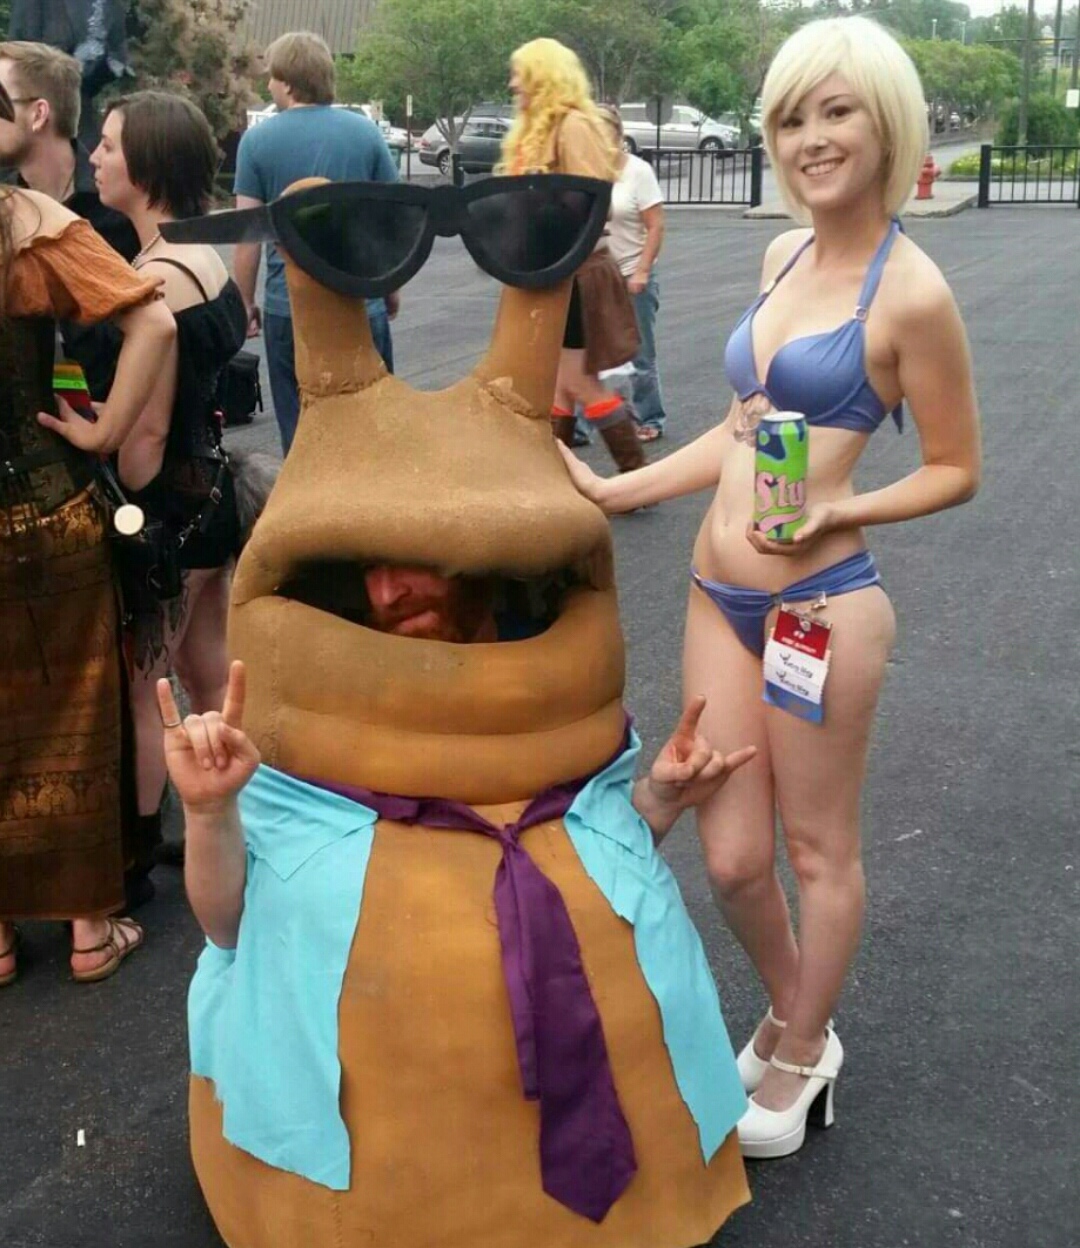 man in funny costume and girl in bikini